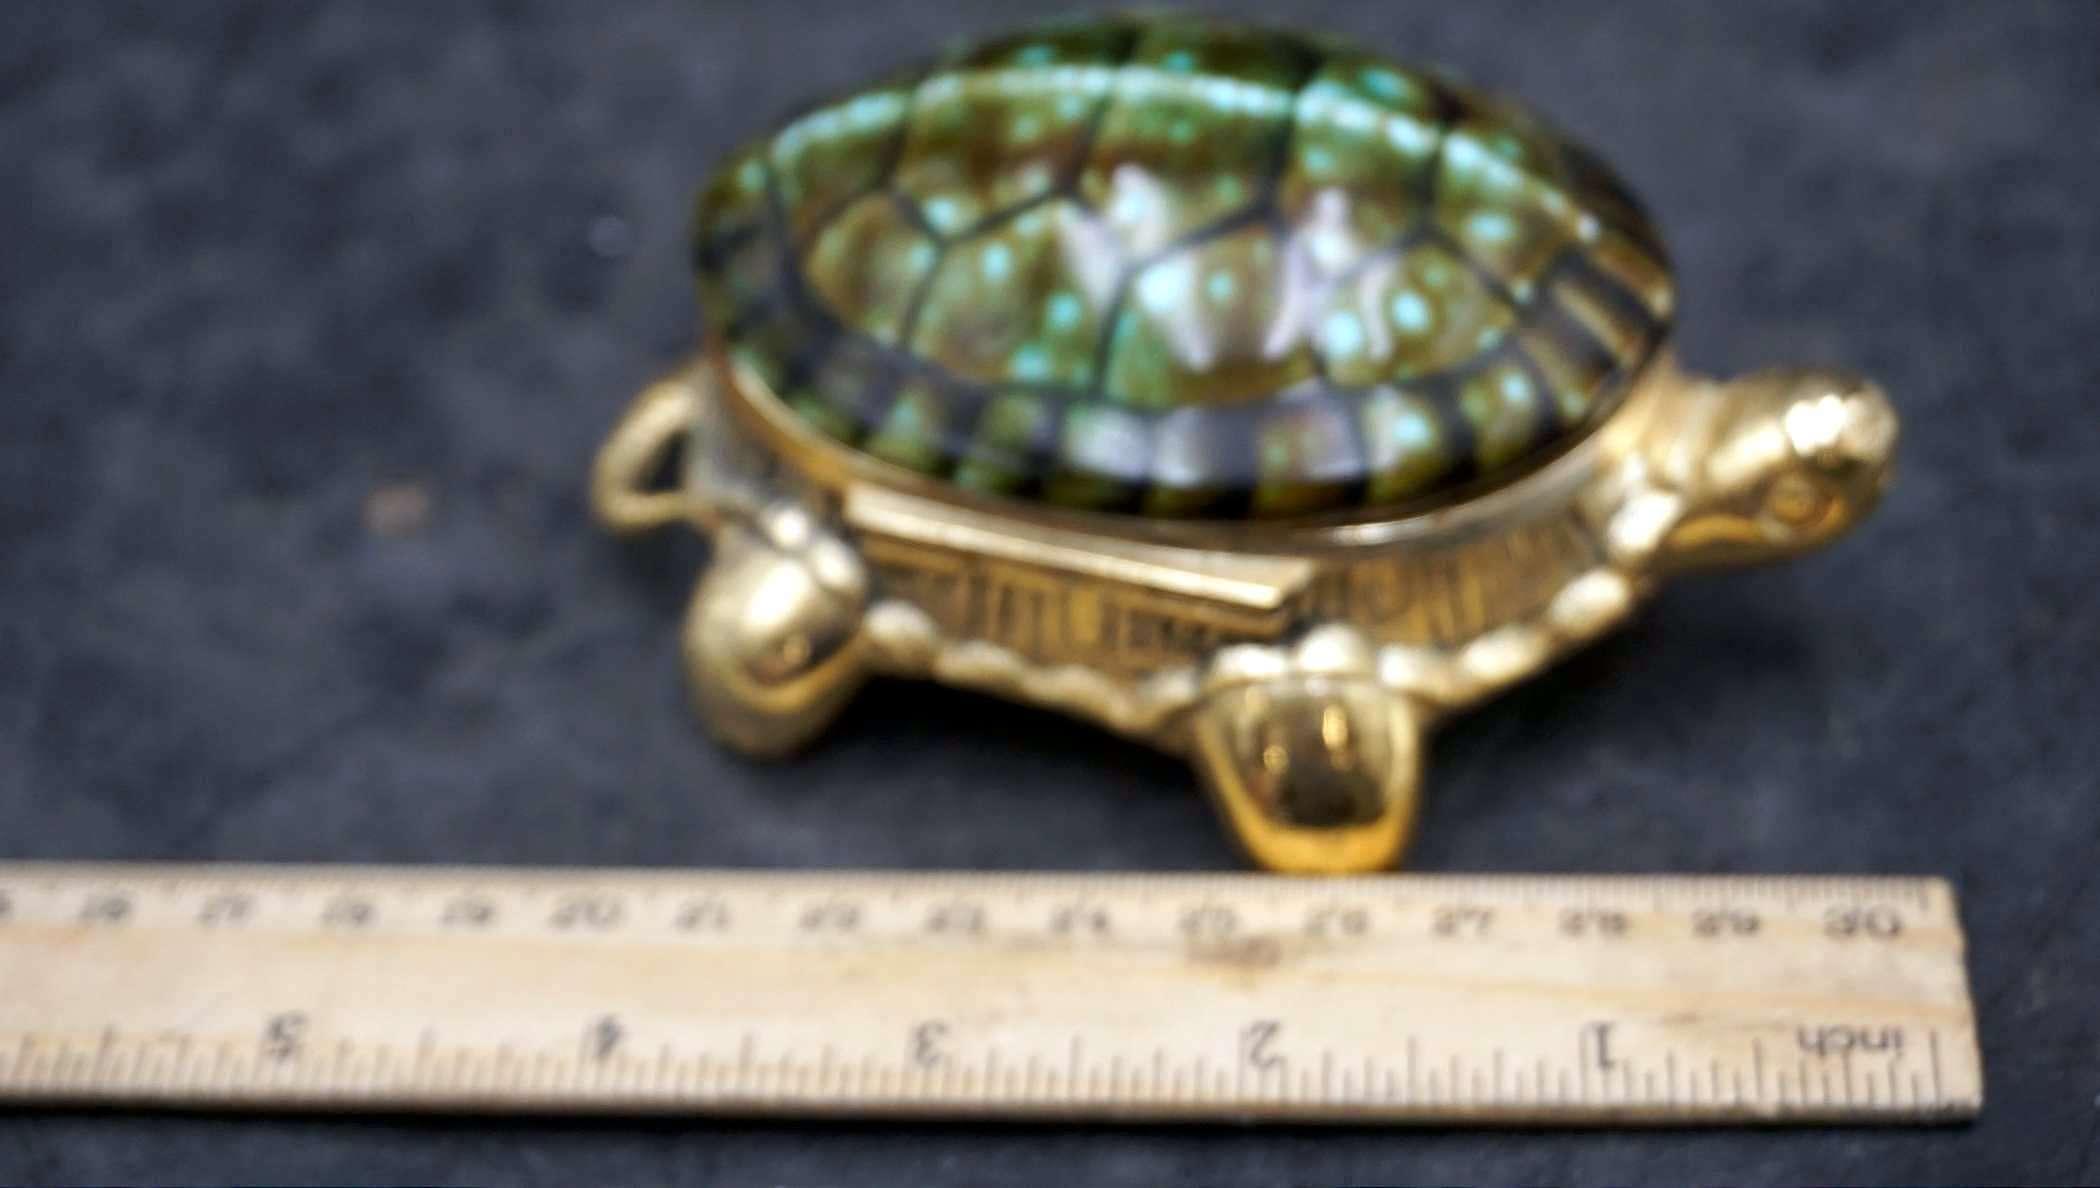 Vintage Metal And Green Turtle Trinket Box